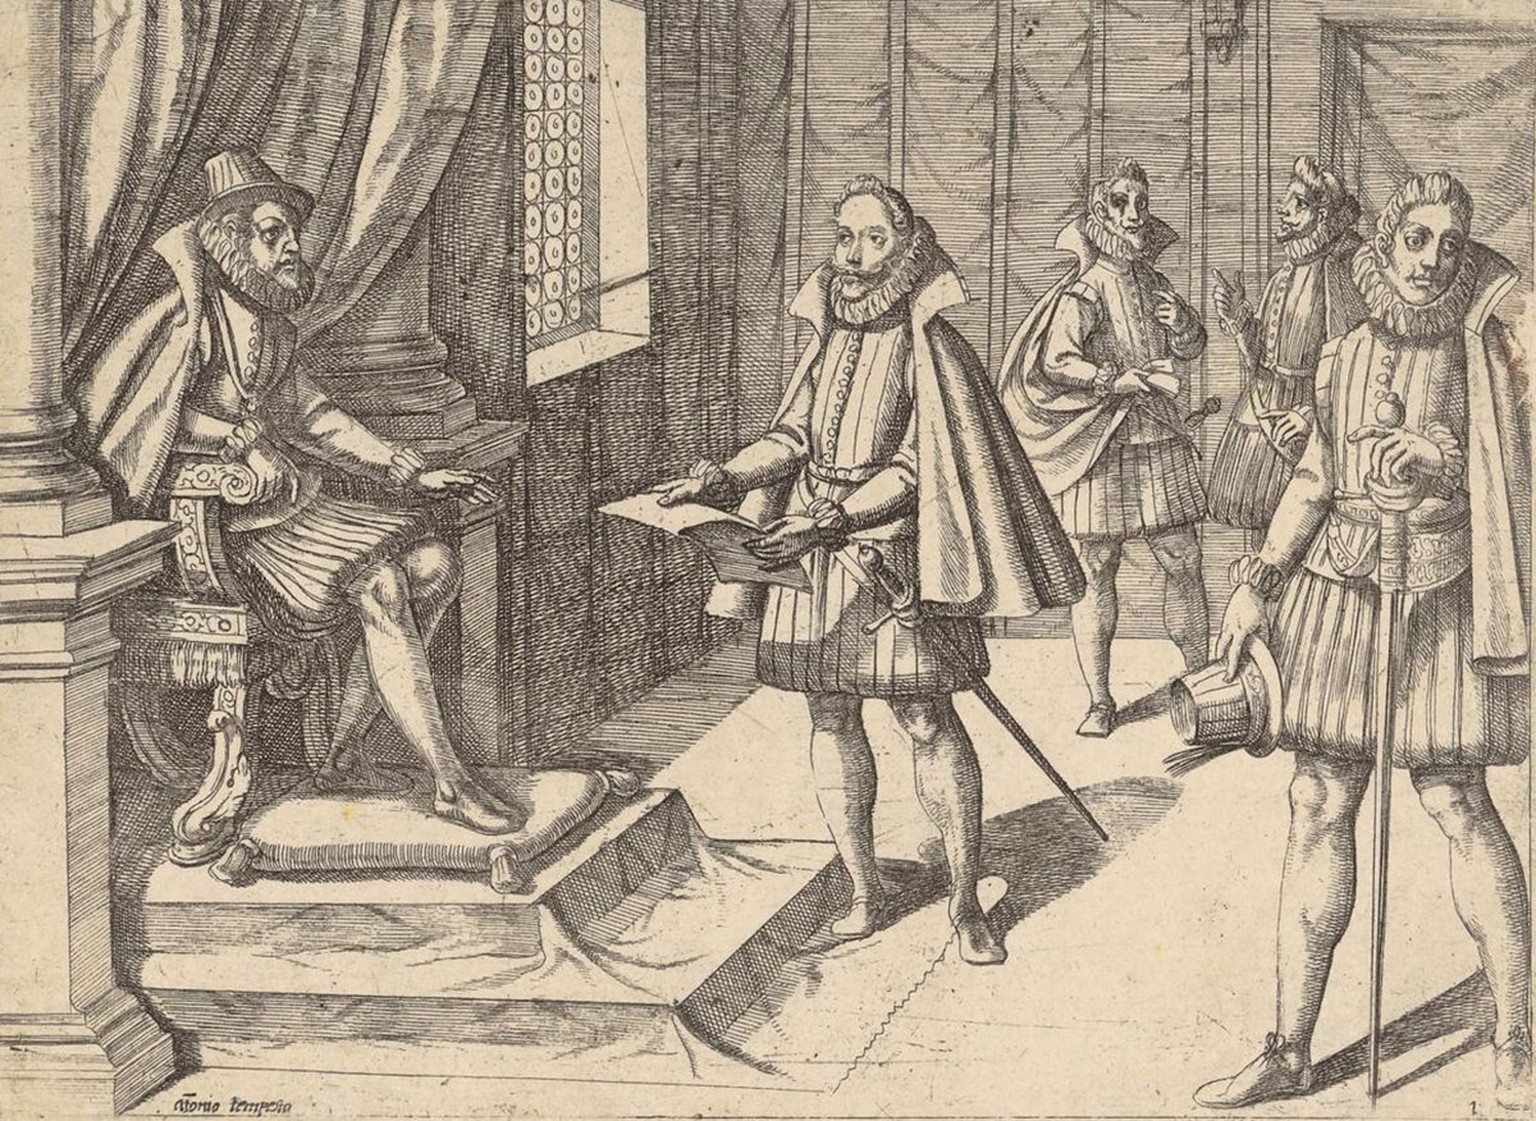 Philipp II. von Spanien auf seinem Thron, um 1590.
https://www.e-gs.ethz.ch/eMP/eMuseumPlus?service=ExternalInterface&amp;module=collection&amp;objectId=96506&amp;viewType=detailView